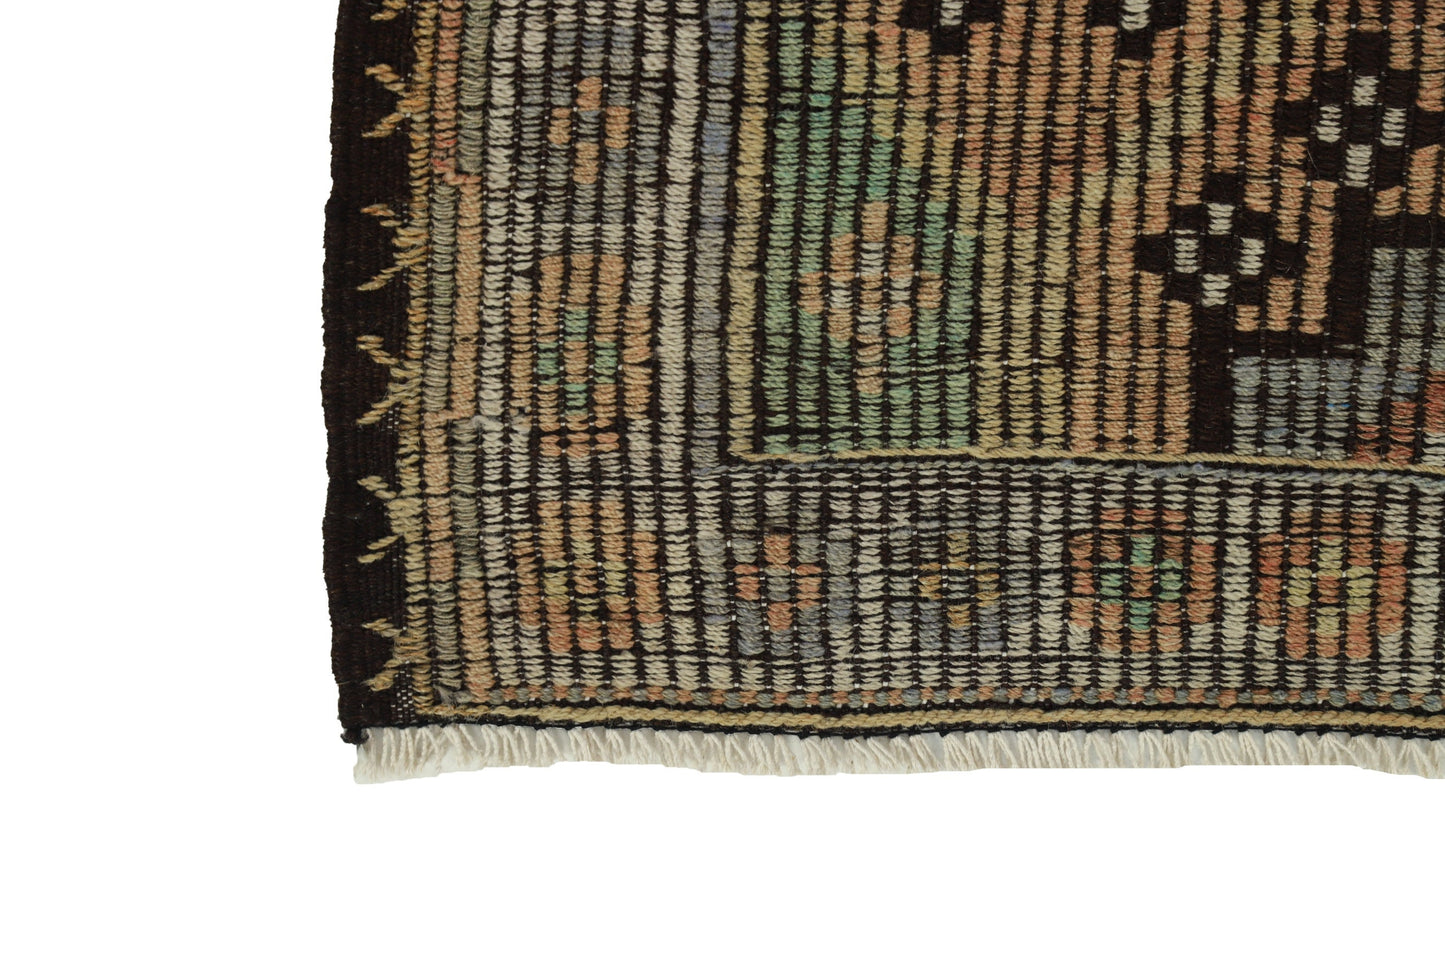 Kilim rug, Area rug, Turkish Kilim rug, Handmade rug, Bohemian Decor,Bedroom rug, Vintage KİLİM RUG 6x10, Turkey rug,8196